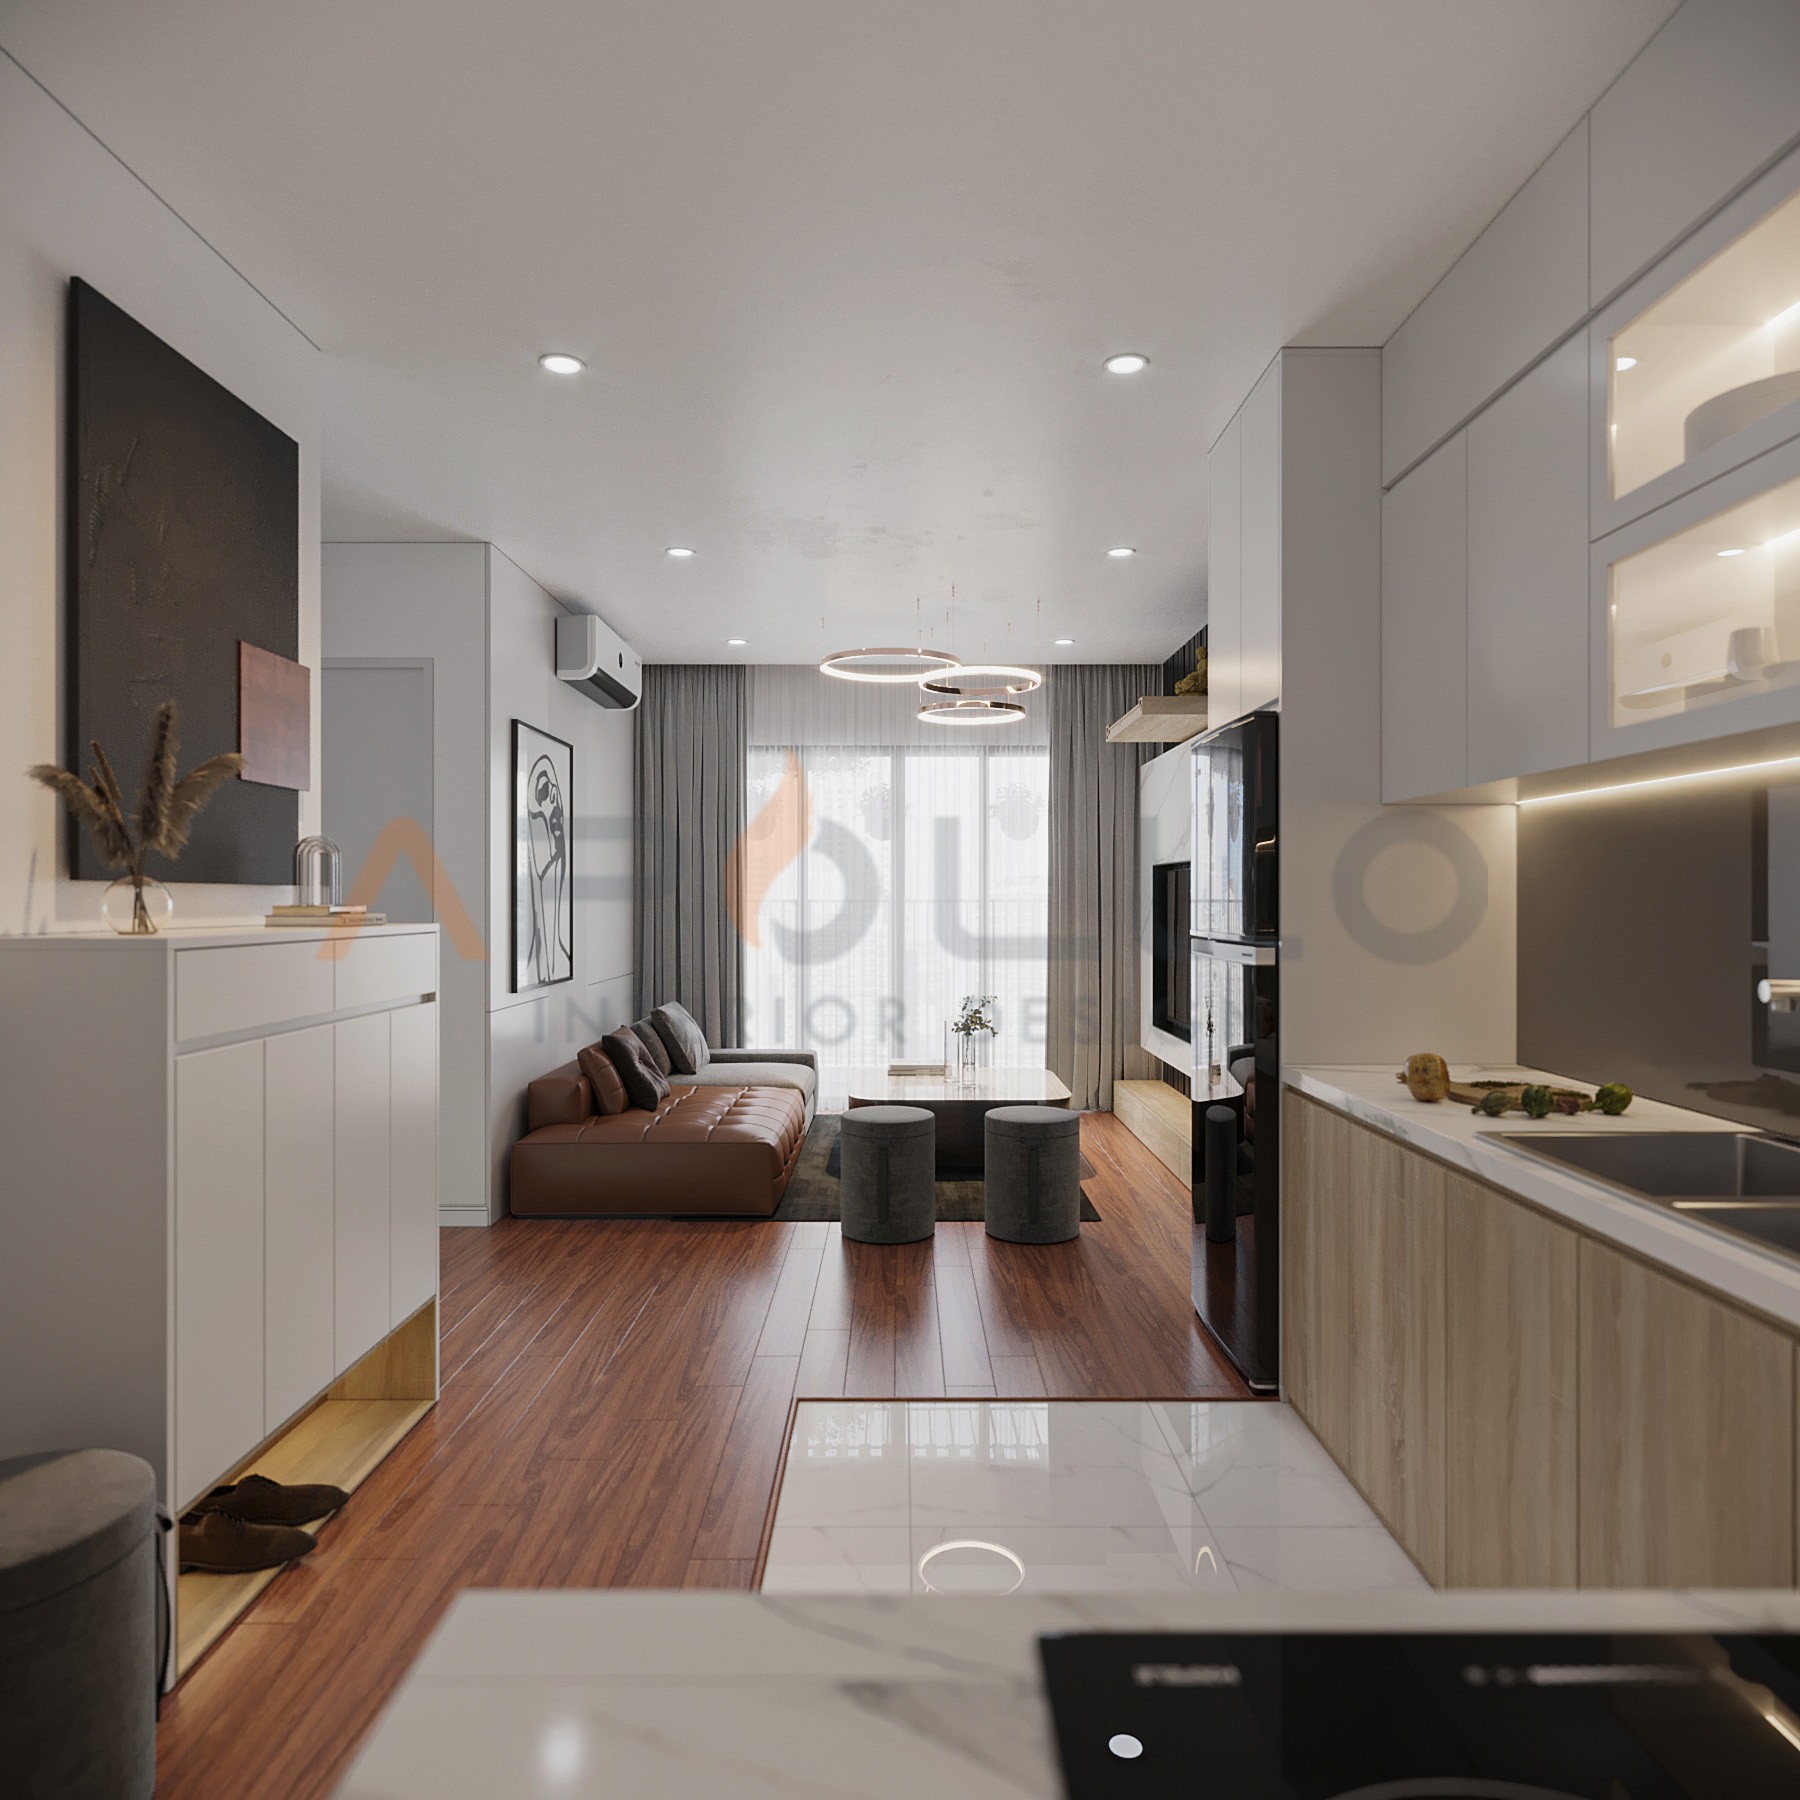 Thiết kế nội thất căn hộ 2PN Imperia Smart City